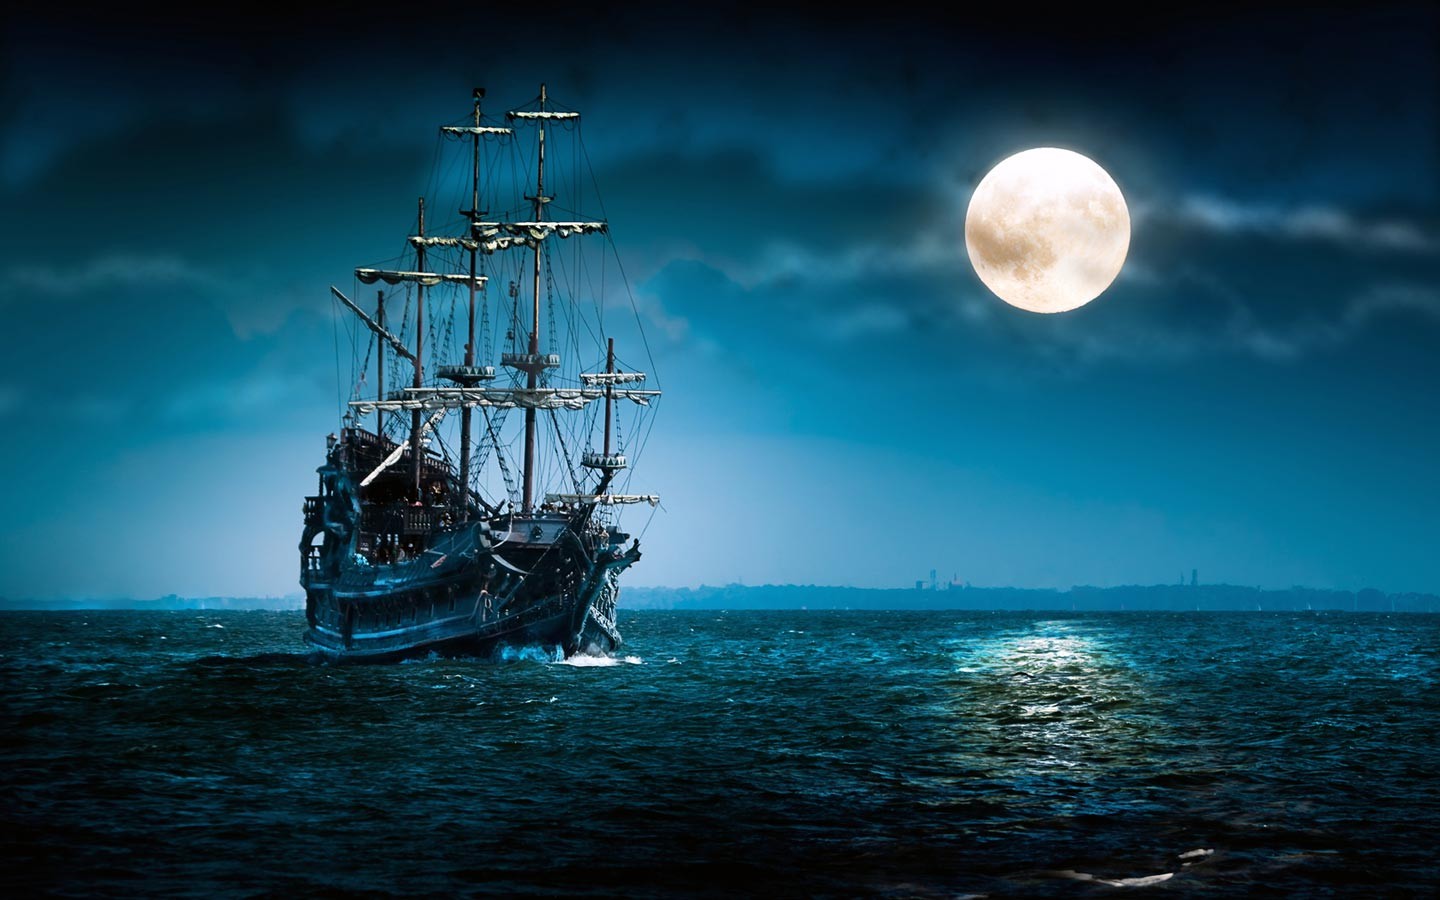 General 1440x900 Moon sea night sailing ship fantasy art vehicle